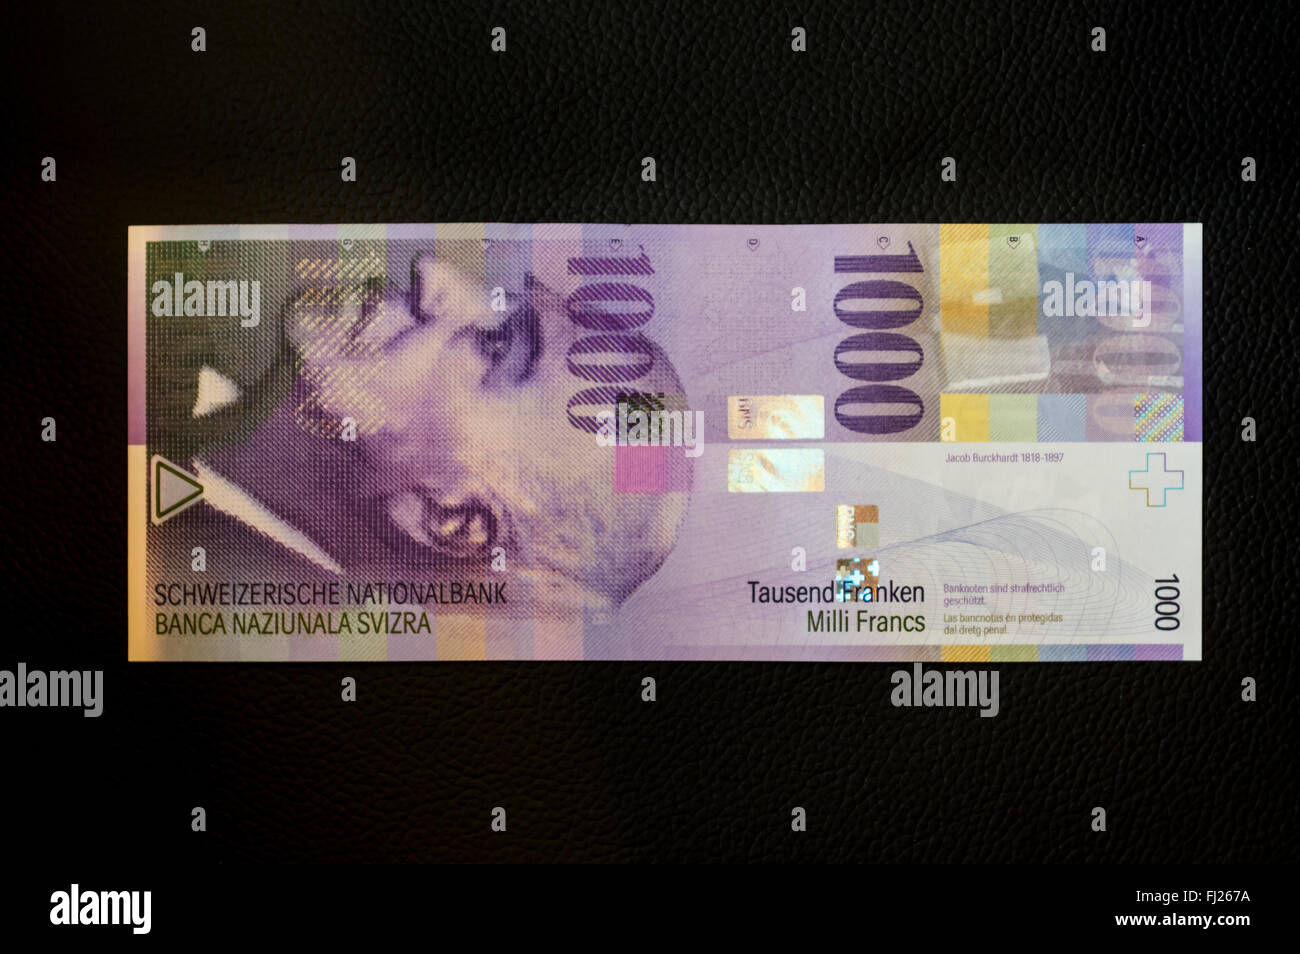 1000 Schweizer Franken Banknote auf schwarzem Hintergrund. Die lila Hinweis zeigt ein Porträt von Jacob Burckhardt. Stockfoto